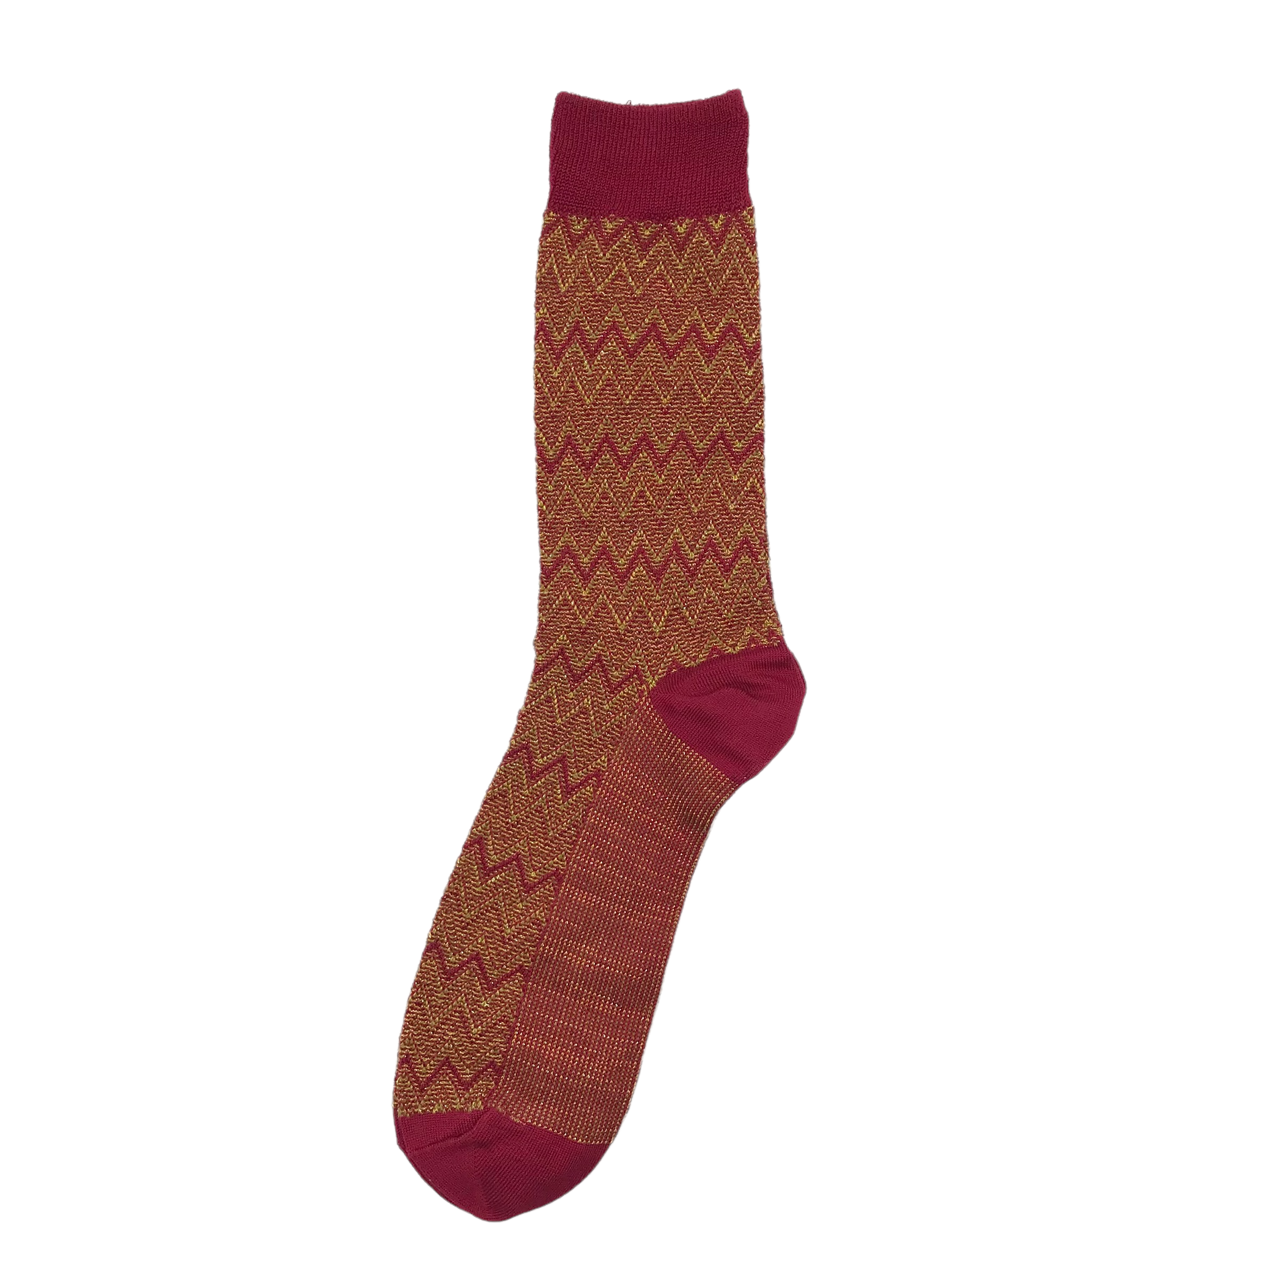 Men's Sorrento socks